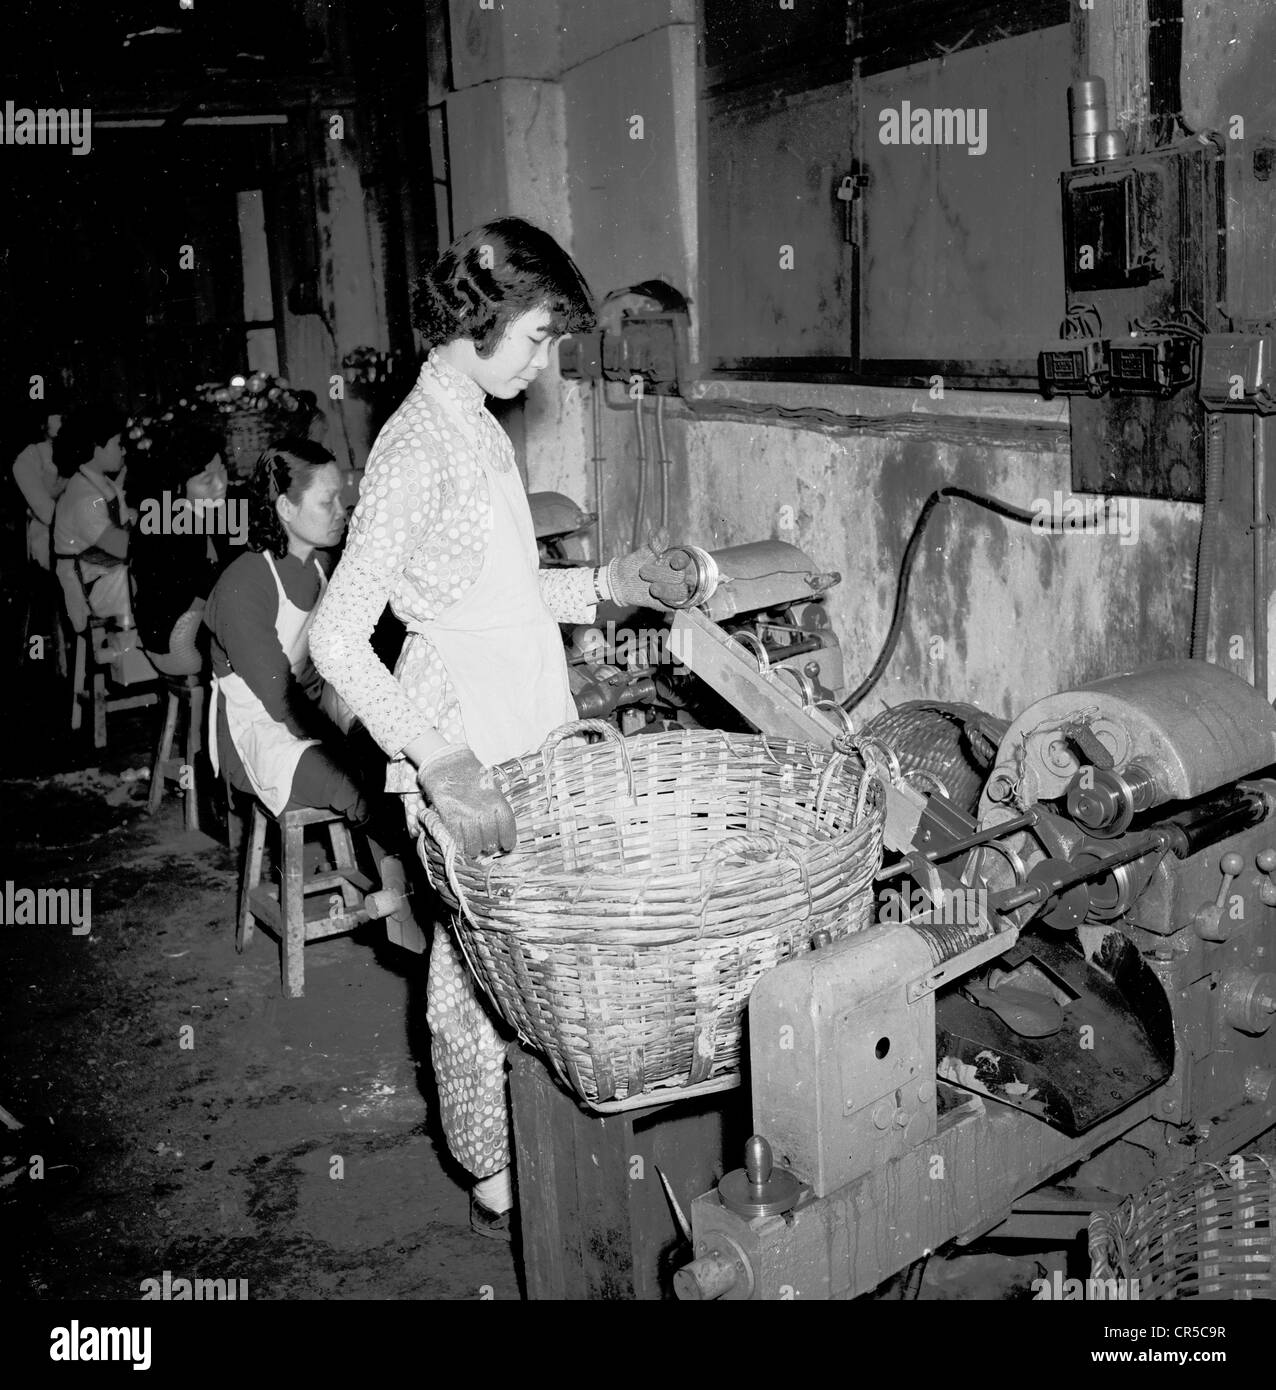 Hong Kong,1950s, una joven trabajadora china que lleva guantes de goma de pie sosteniendo una gran cesta de mimbre por maquinaria de bajo nivel en una pequeña fábrica del centro de la ciudad, trabajando junto con otra mano de obra femenina asiática. La ética de trabajo y el espíritu emprendedor de los chinos de hong kong experimentaron un increíble crecimiento de la manufactura en pequeña escala en los años de posguerra, con un número estimado de empresas manufactureras en pequeña escala para el 1990s, que ascendía a unos 23.000. Comúnmente conocidas como 'fábricas planas', normalmente empleaban a 10 personas o menos y estaban ubicadas en sótanos o en los primeros pisos de edificios altos. Foto de stock